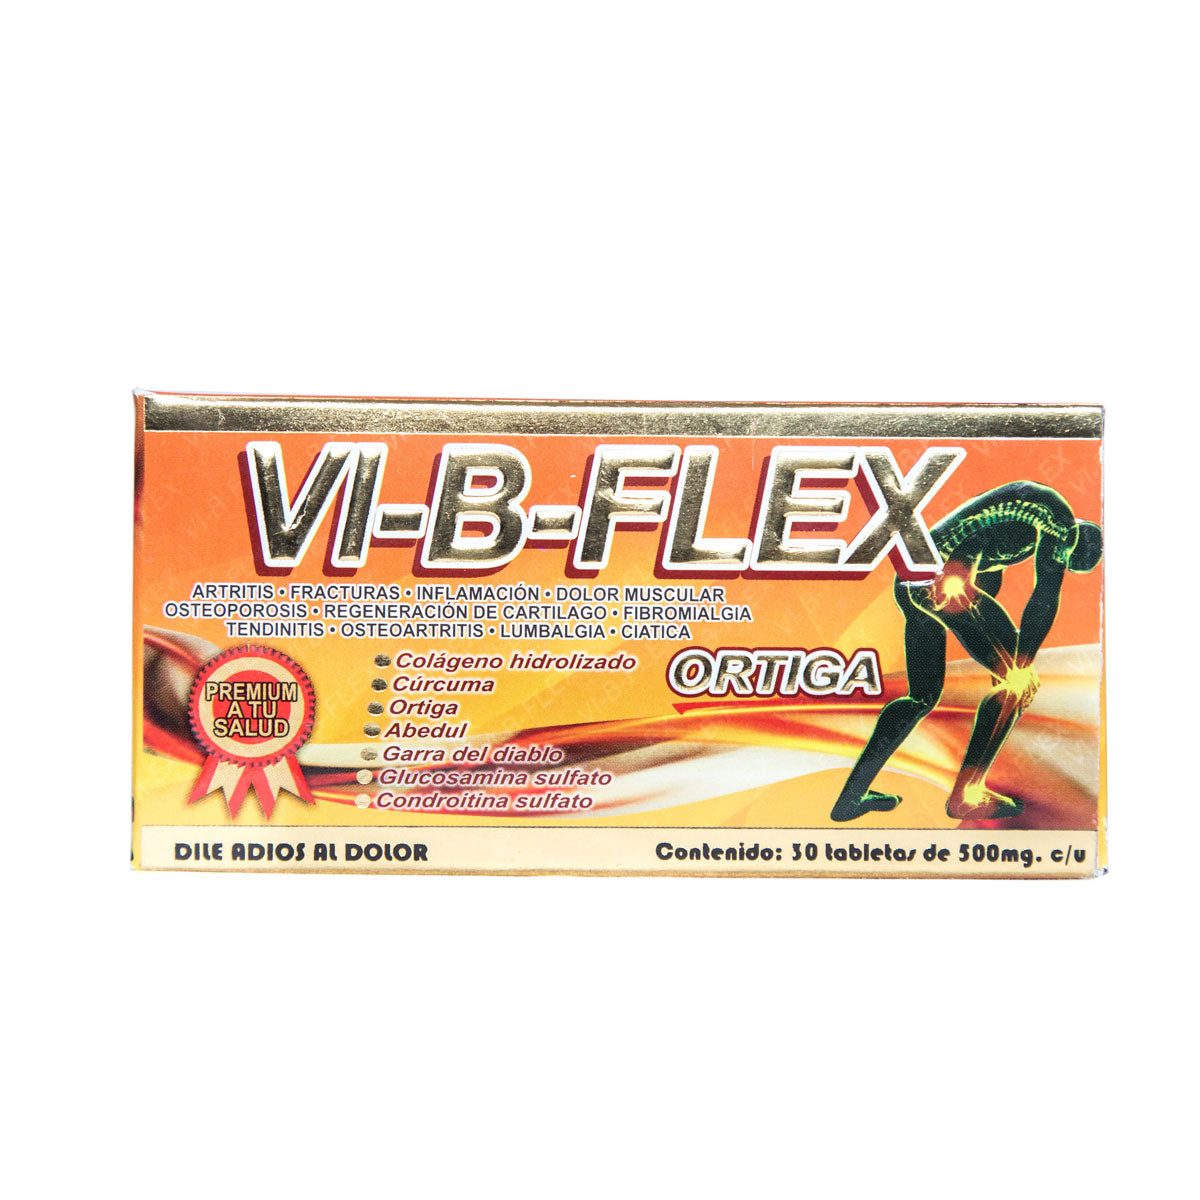 Vi – B – Flex 30 tabletas